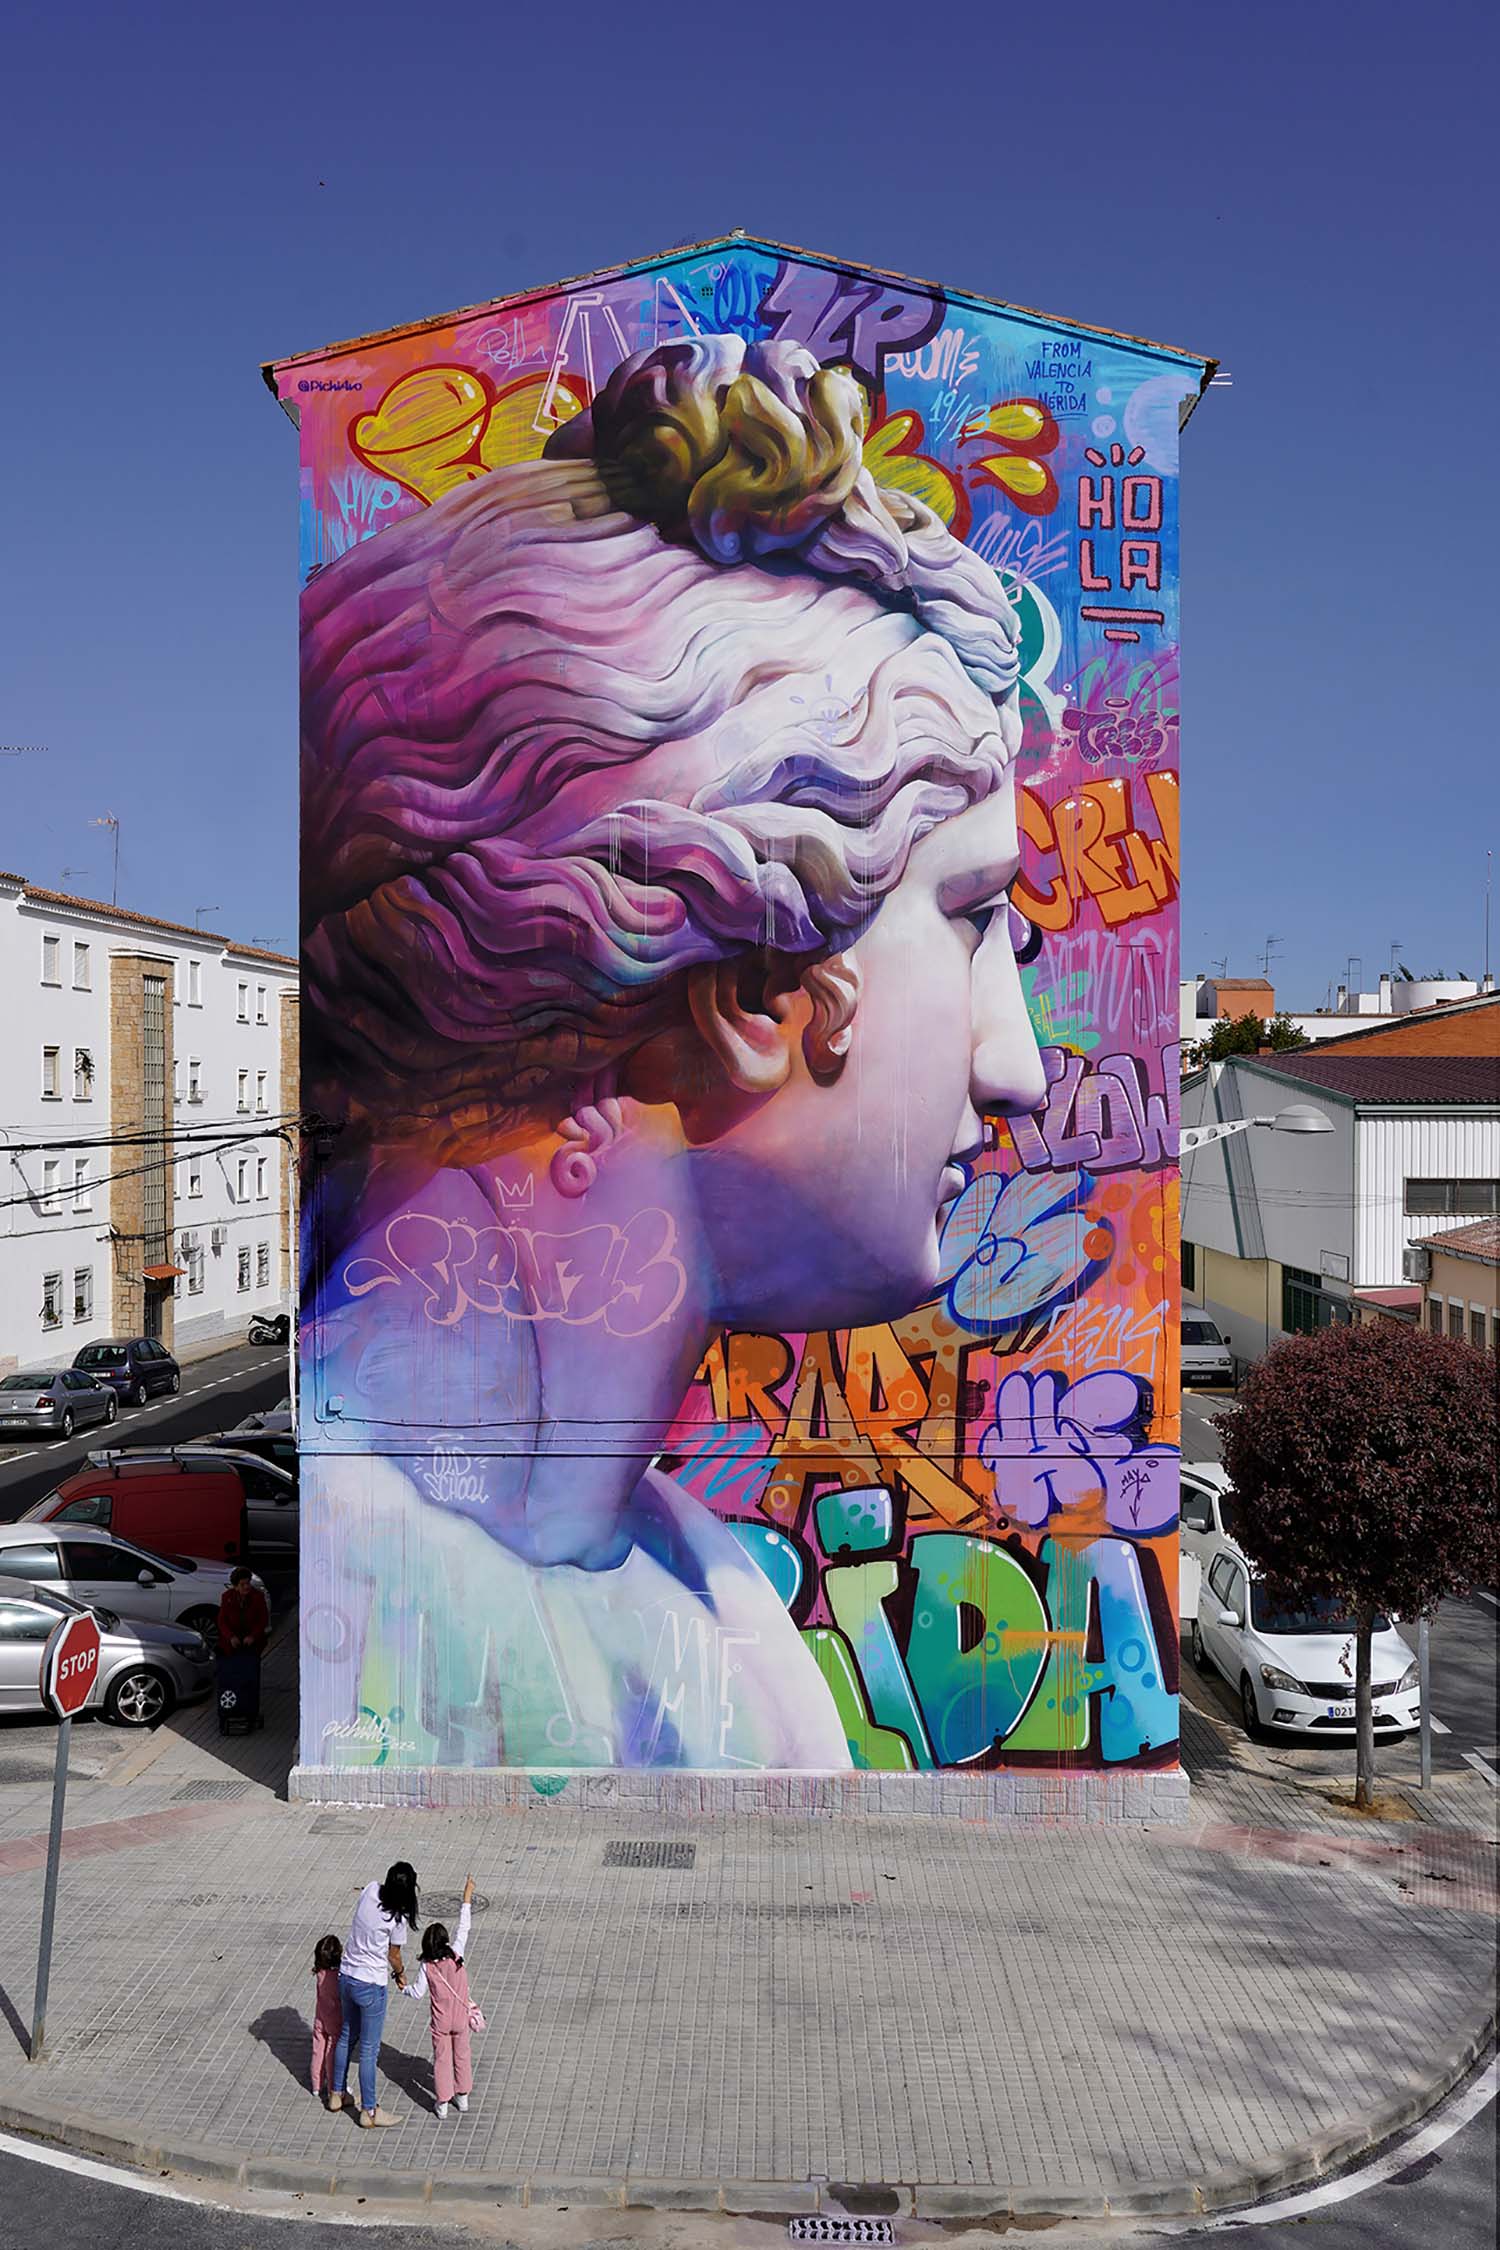 Venus del Mitreo mural in Mérida, Spain